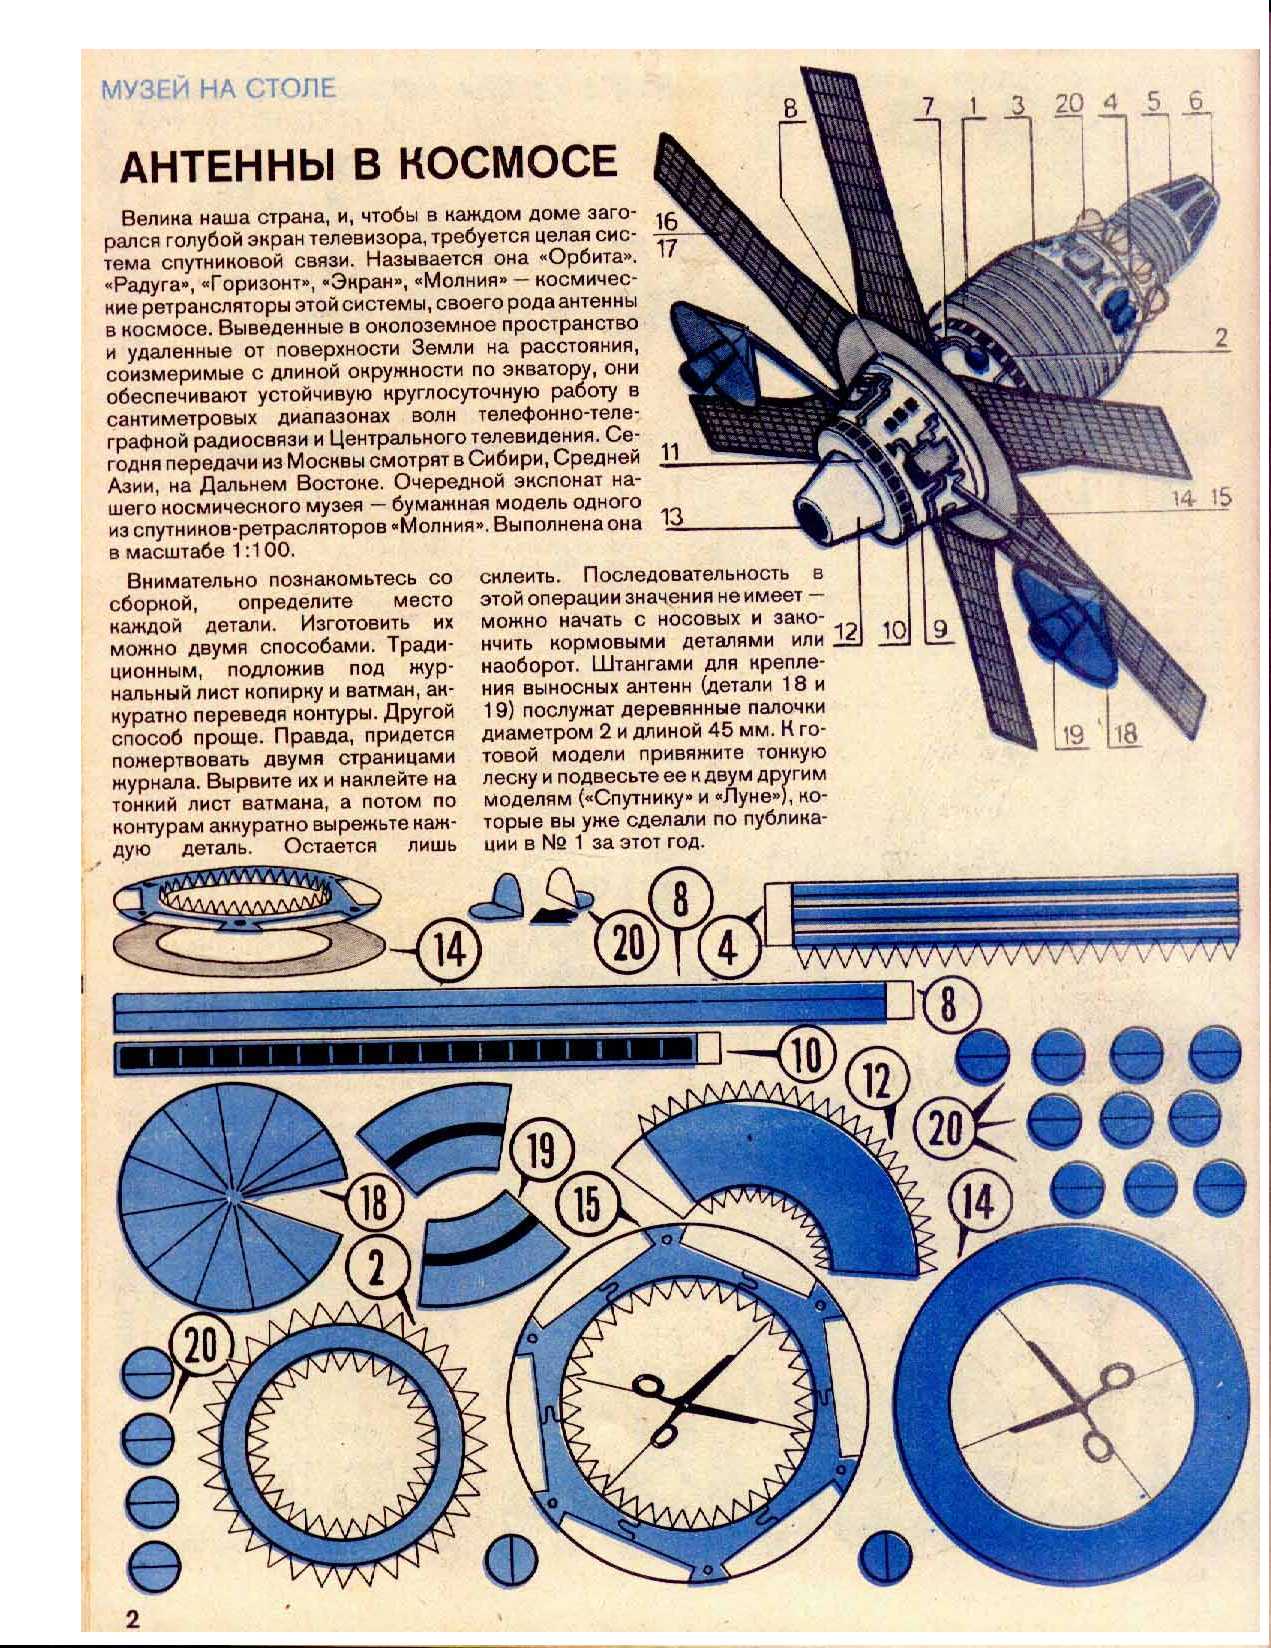  "Левша" 4-5, 1992, 2 c.